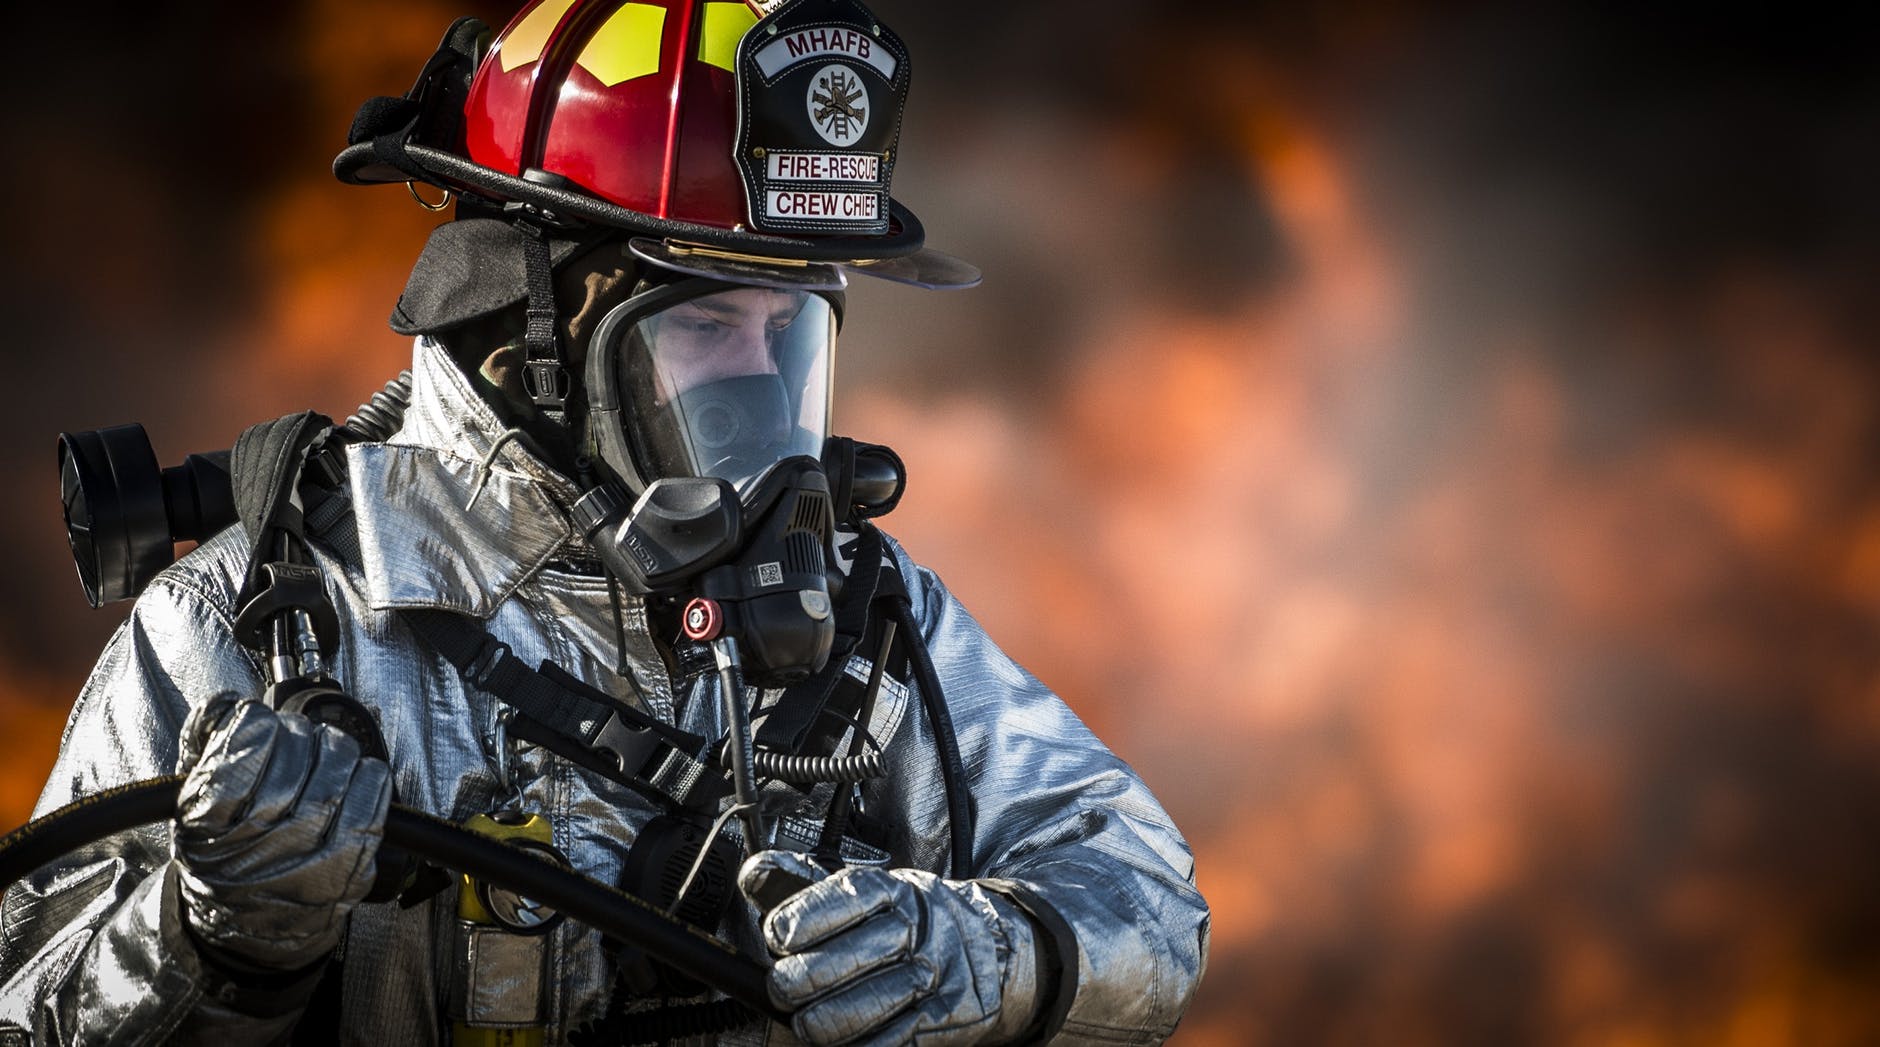 Un bombero con traje protector intentando apagar un incendio. | Foto: Pexels